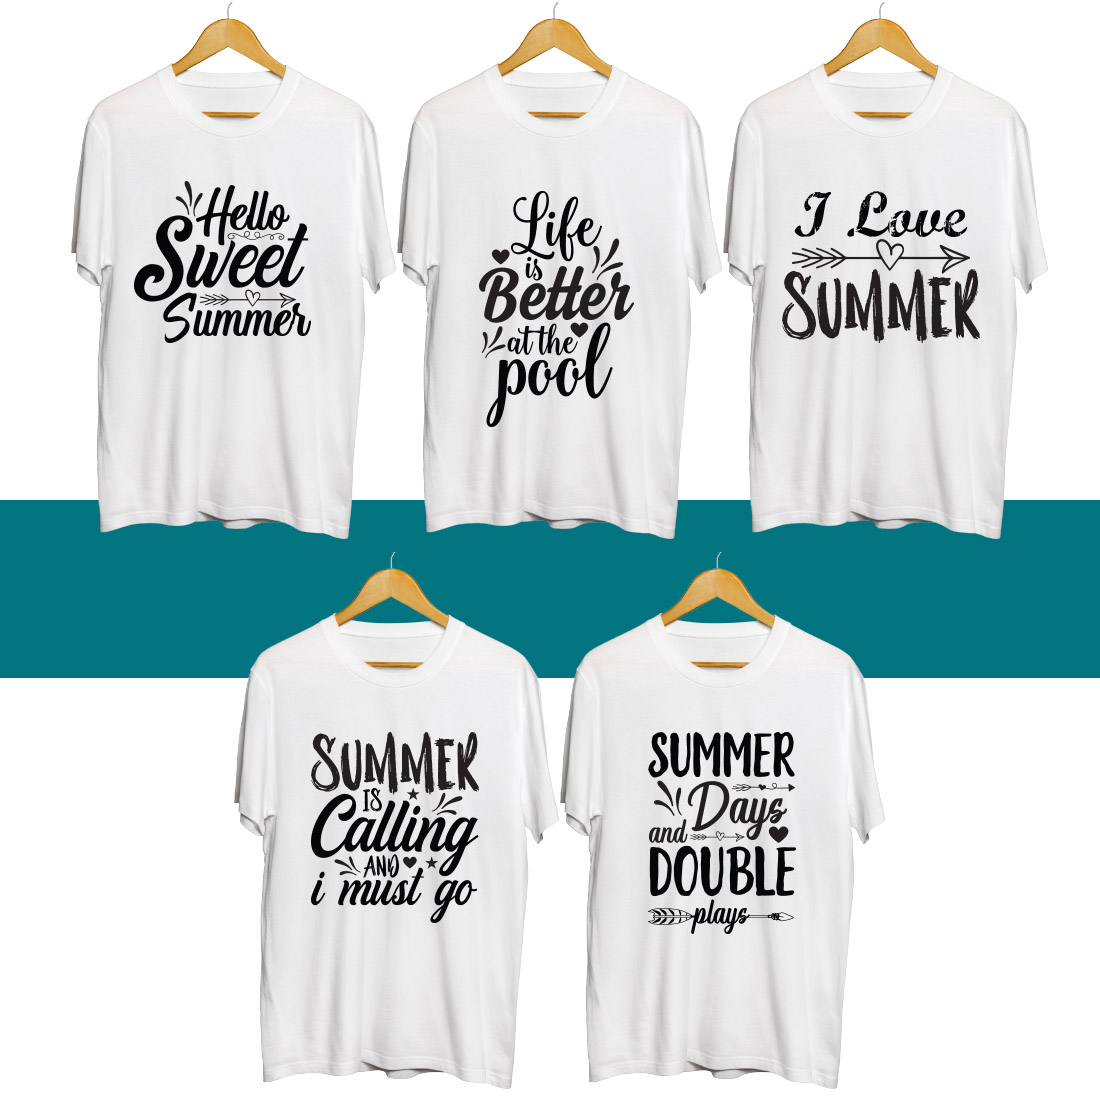 Summer SVG T Shirt Designs Bundle cover image.